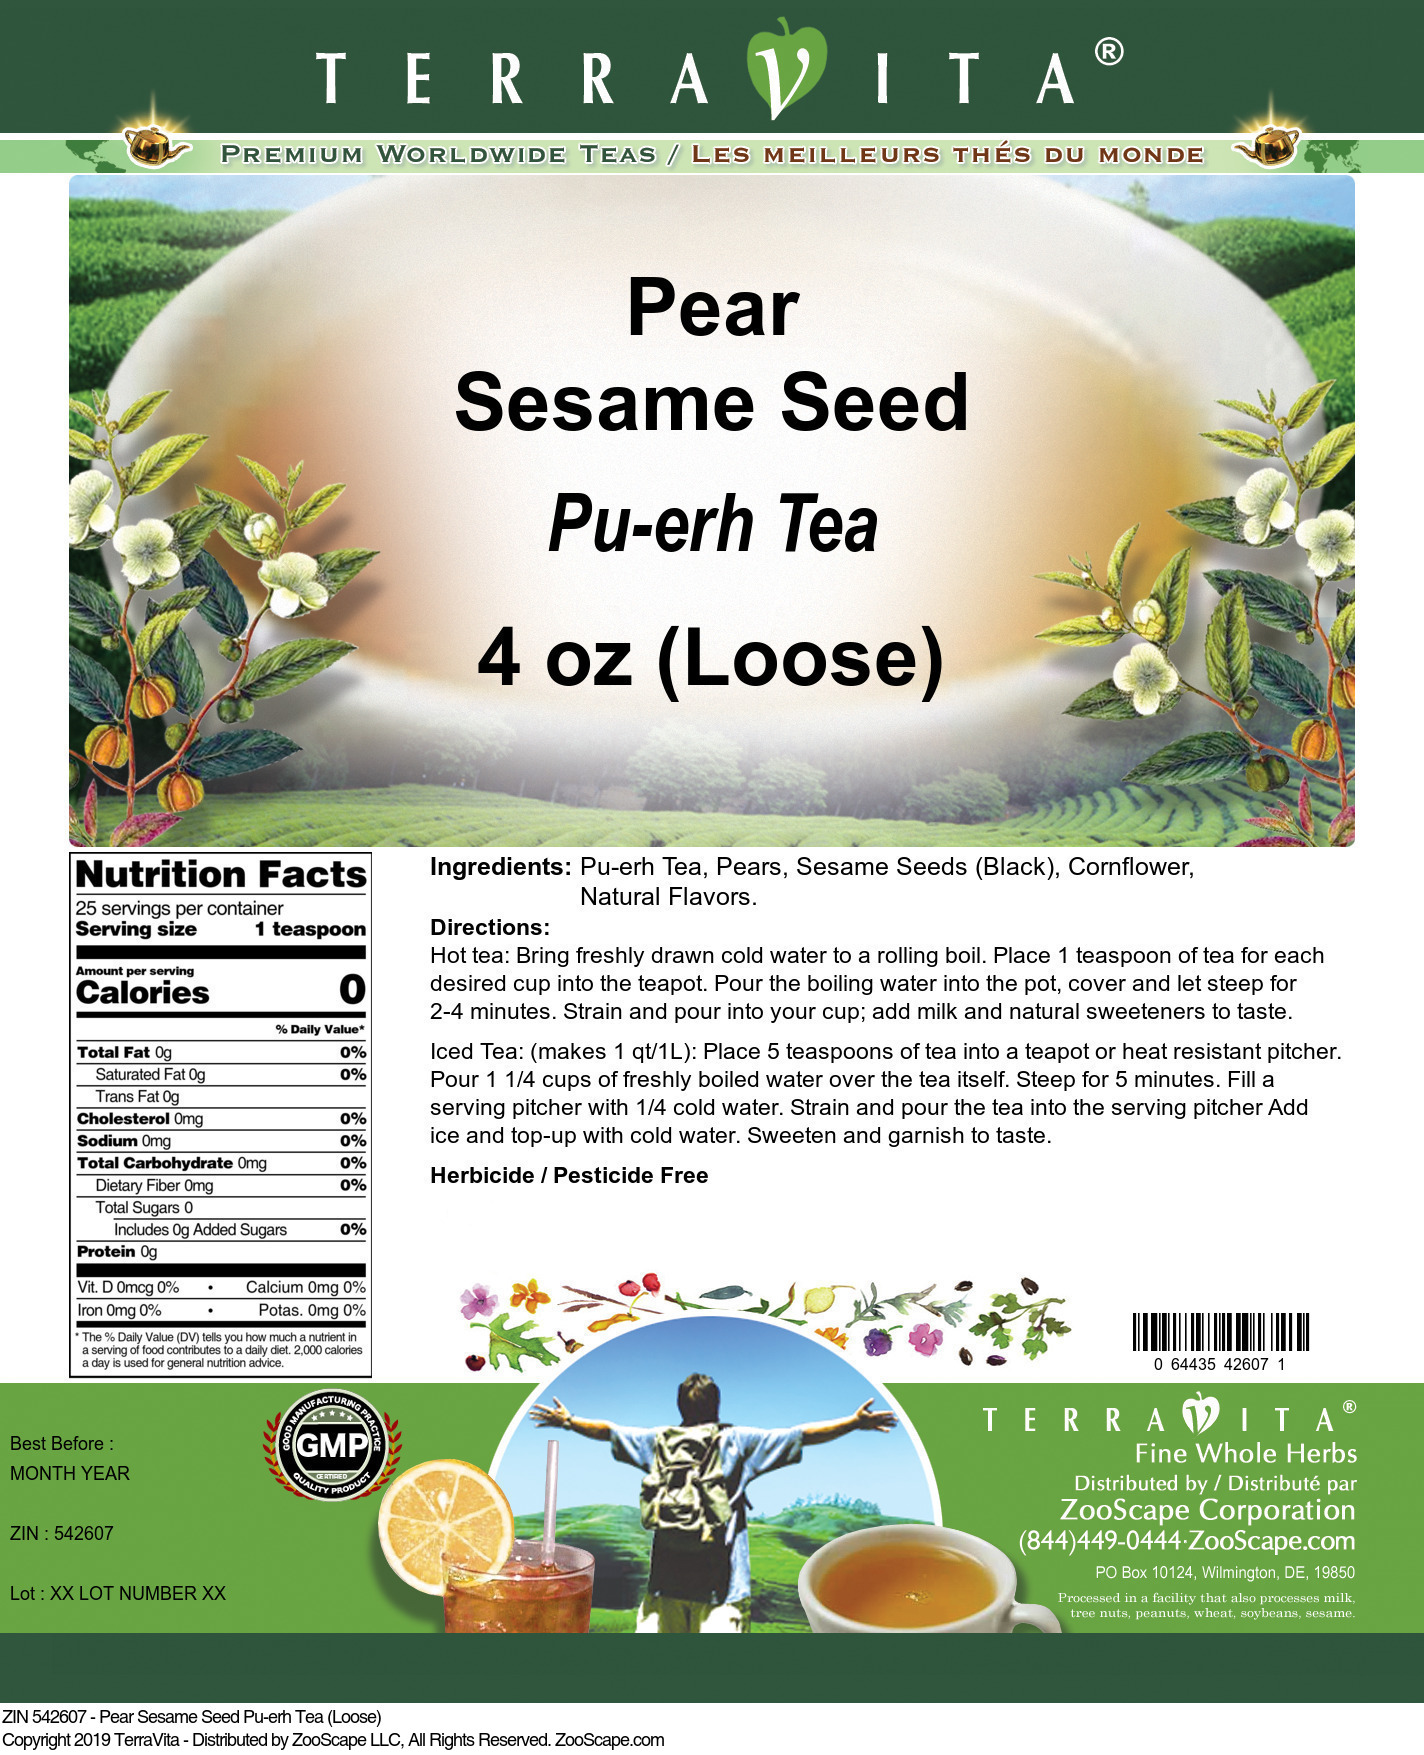 Pear Sesame Seed Pu-erh Tea (Loose) - Label